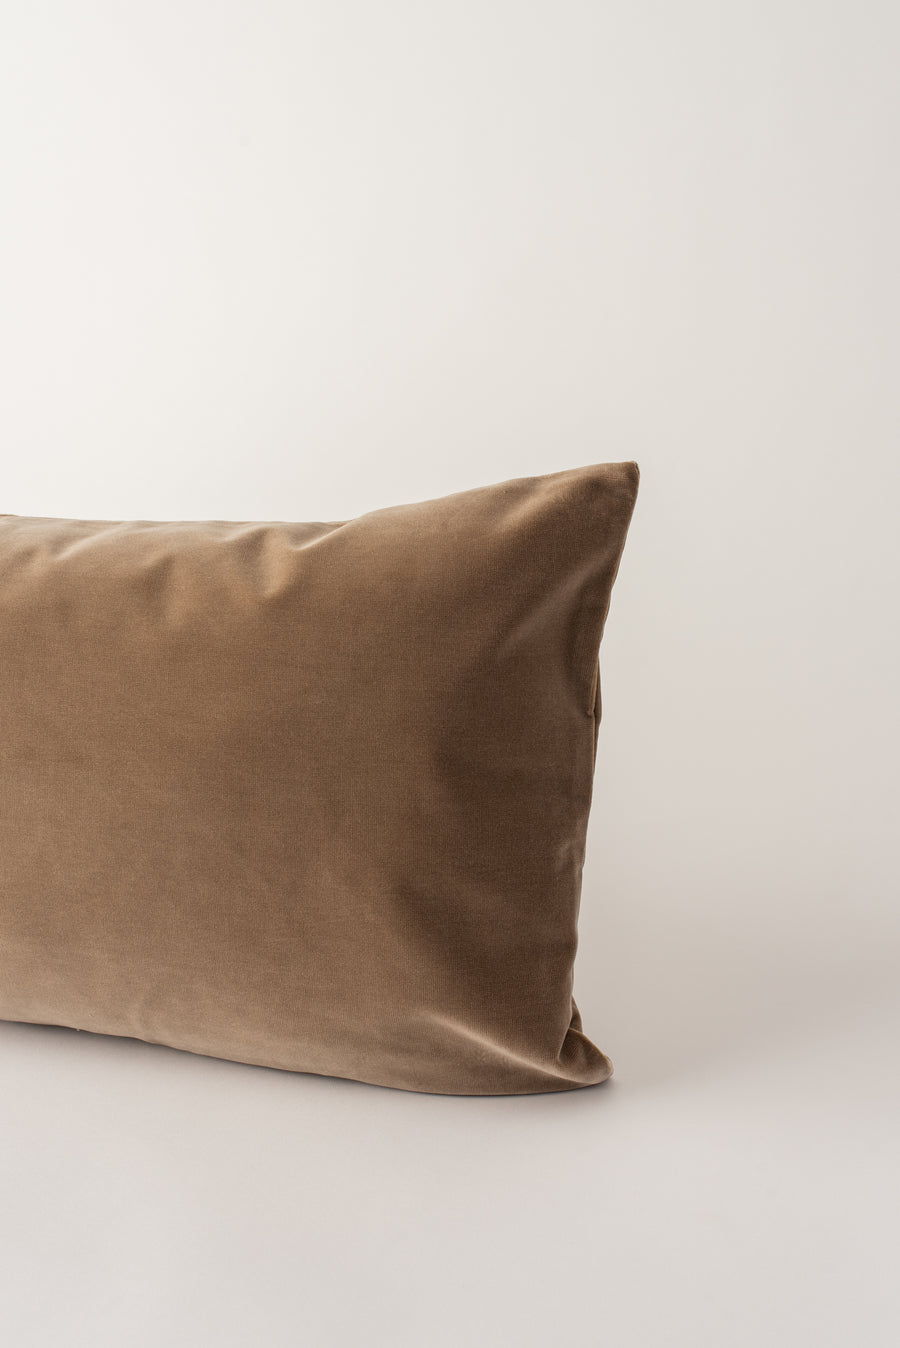 Kindred Cushion - Taupe Velvet Bolster